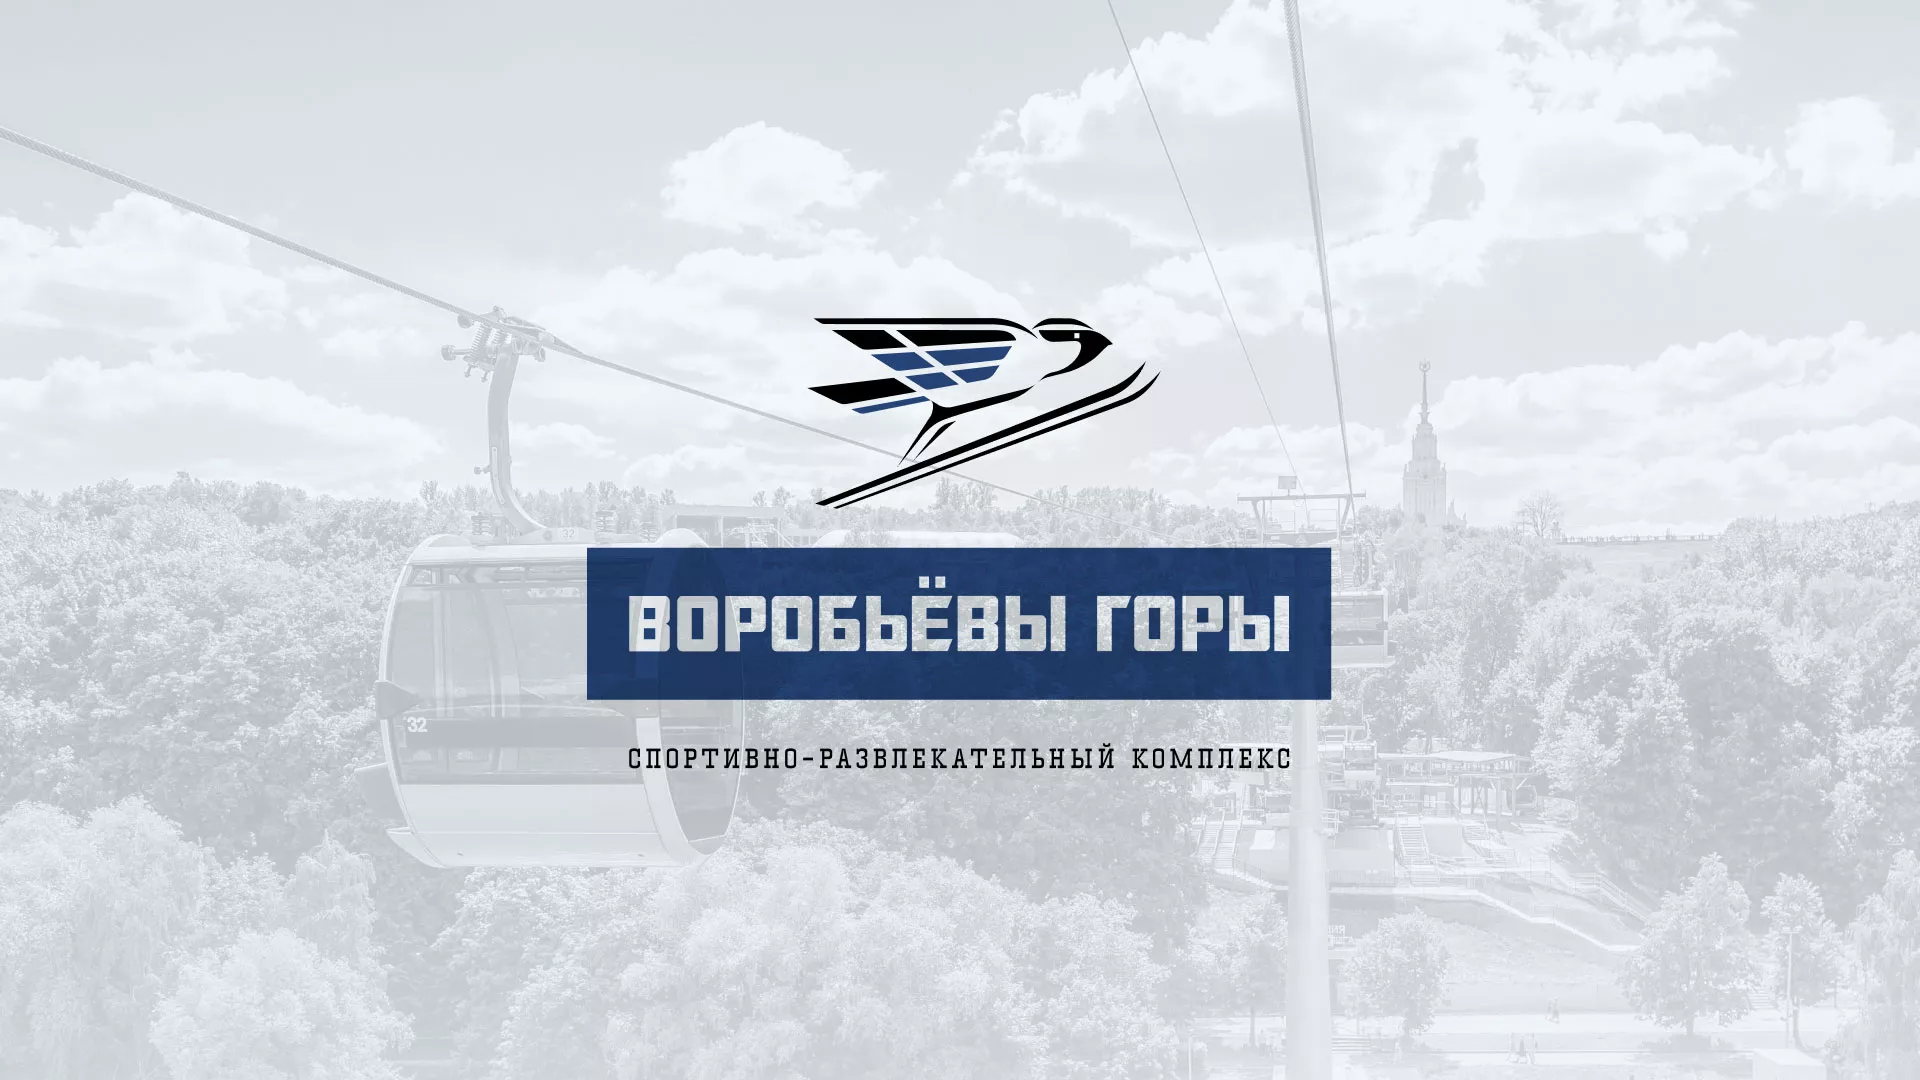 Разработка сайта в Прокопьевске для спортивно-развлекательного комплекса «Воробьёвы горы»